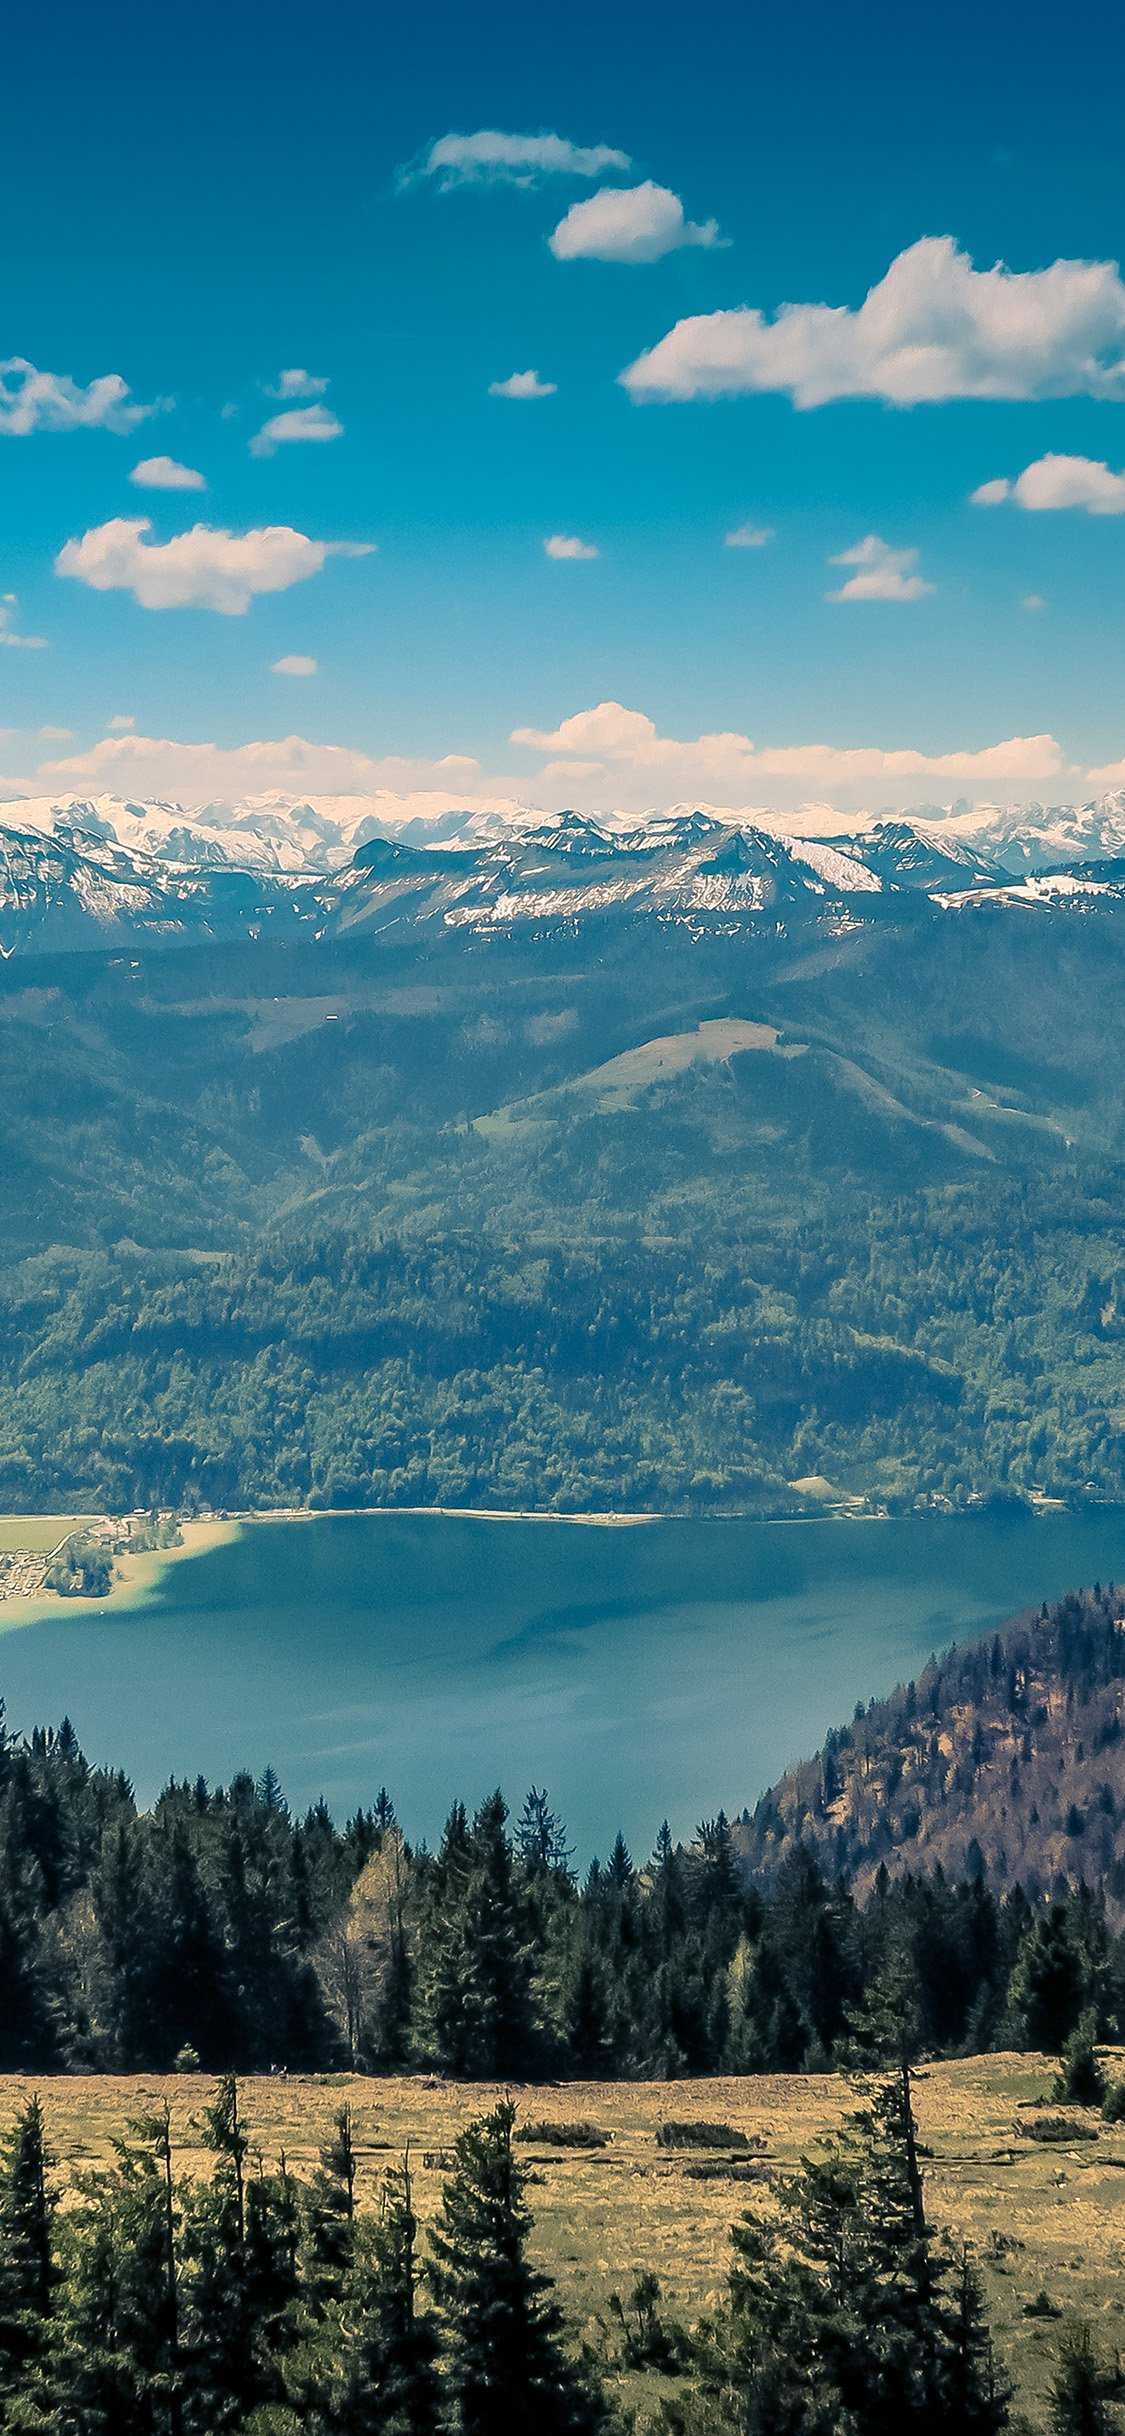 雪山与湖泊 国外旅游唯美高清风景壁纸